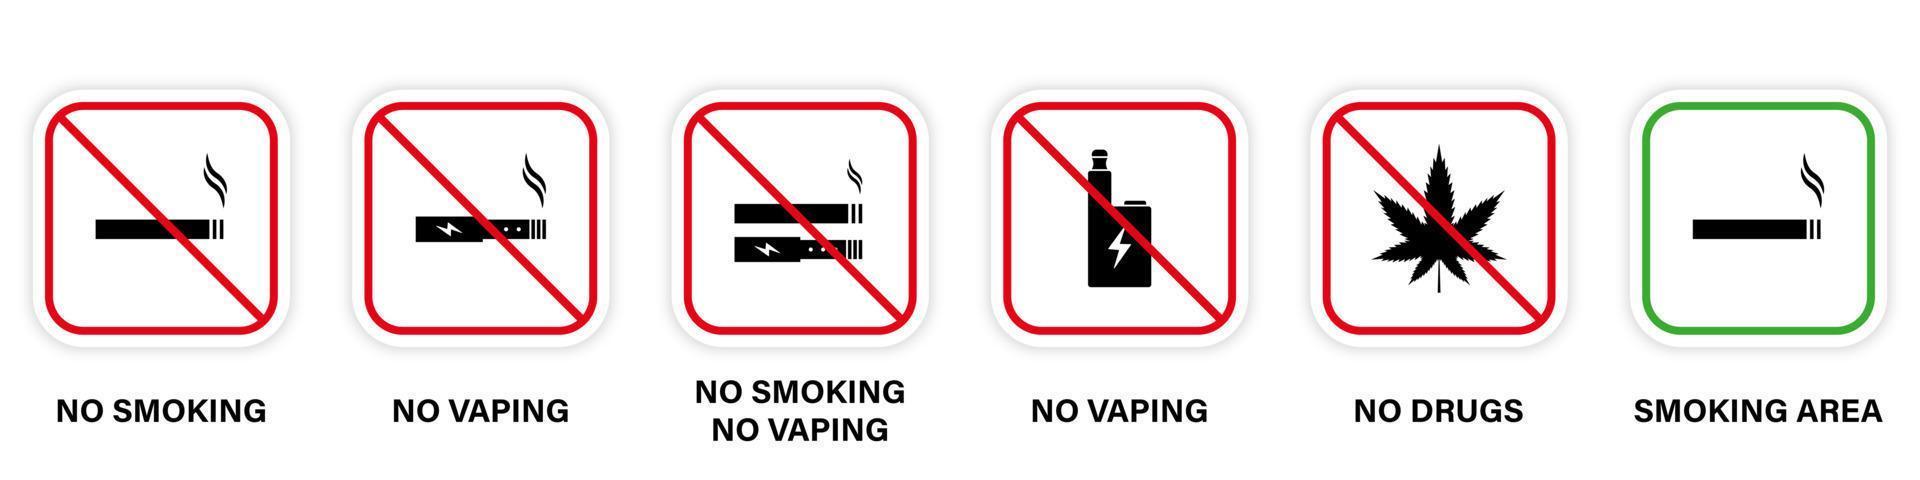 förbud zon rök marijuana vape cigarett tecken. meddelande tillåt rökområde grönt piktogram. rök förbjuden röd stoppsymbol. förbjuden rökning cannabis siluett Ikonuppsättning. isolerade vektor illustration.